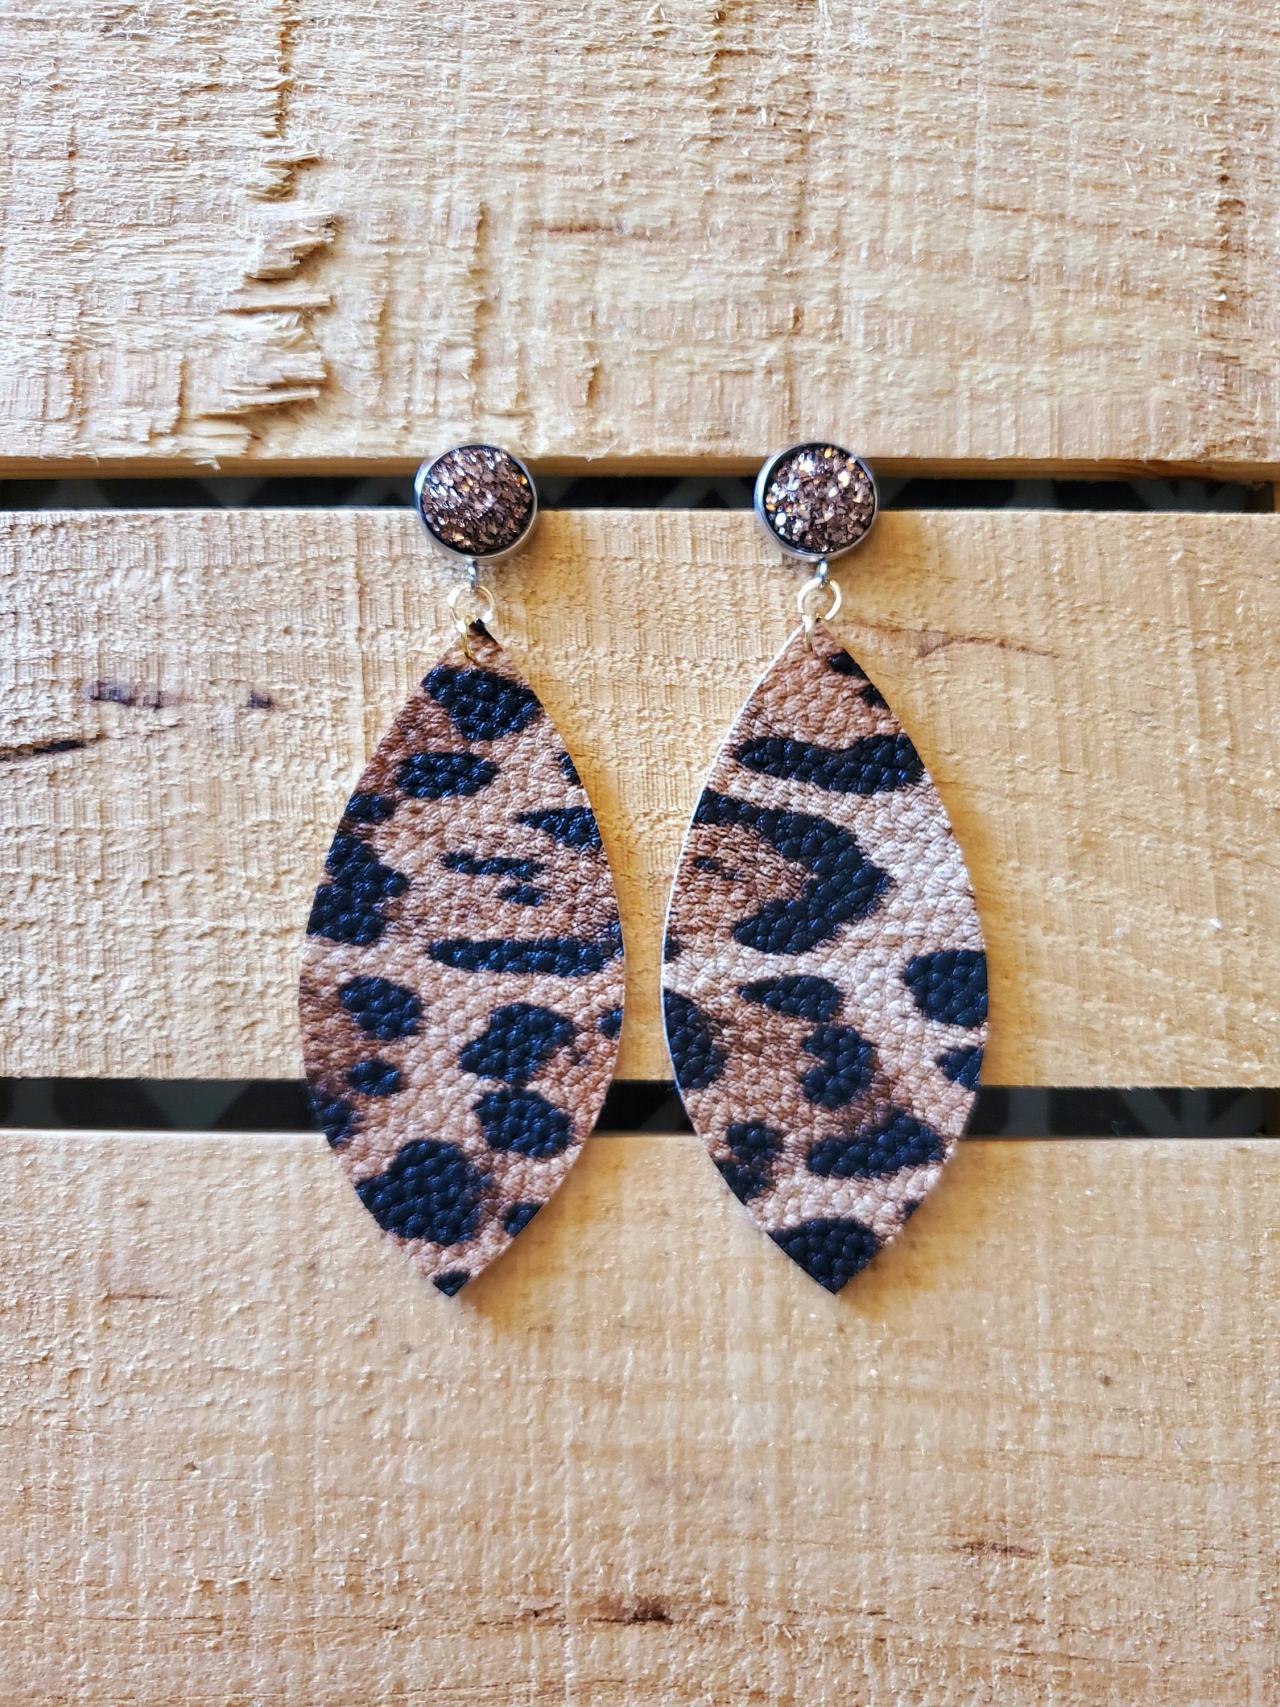 Leopard Print Leather Earrings, Druzy Earrings, Glitter Earrings, Fashion Jewelry, Animal Print Leather Dangles, Sparkle Earrings, Boho Chic